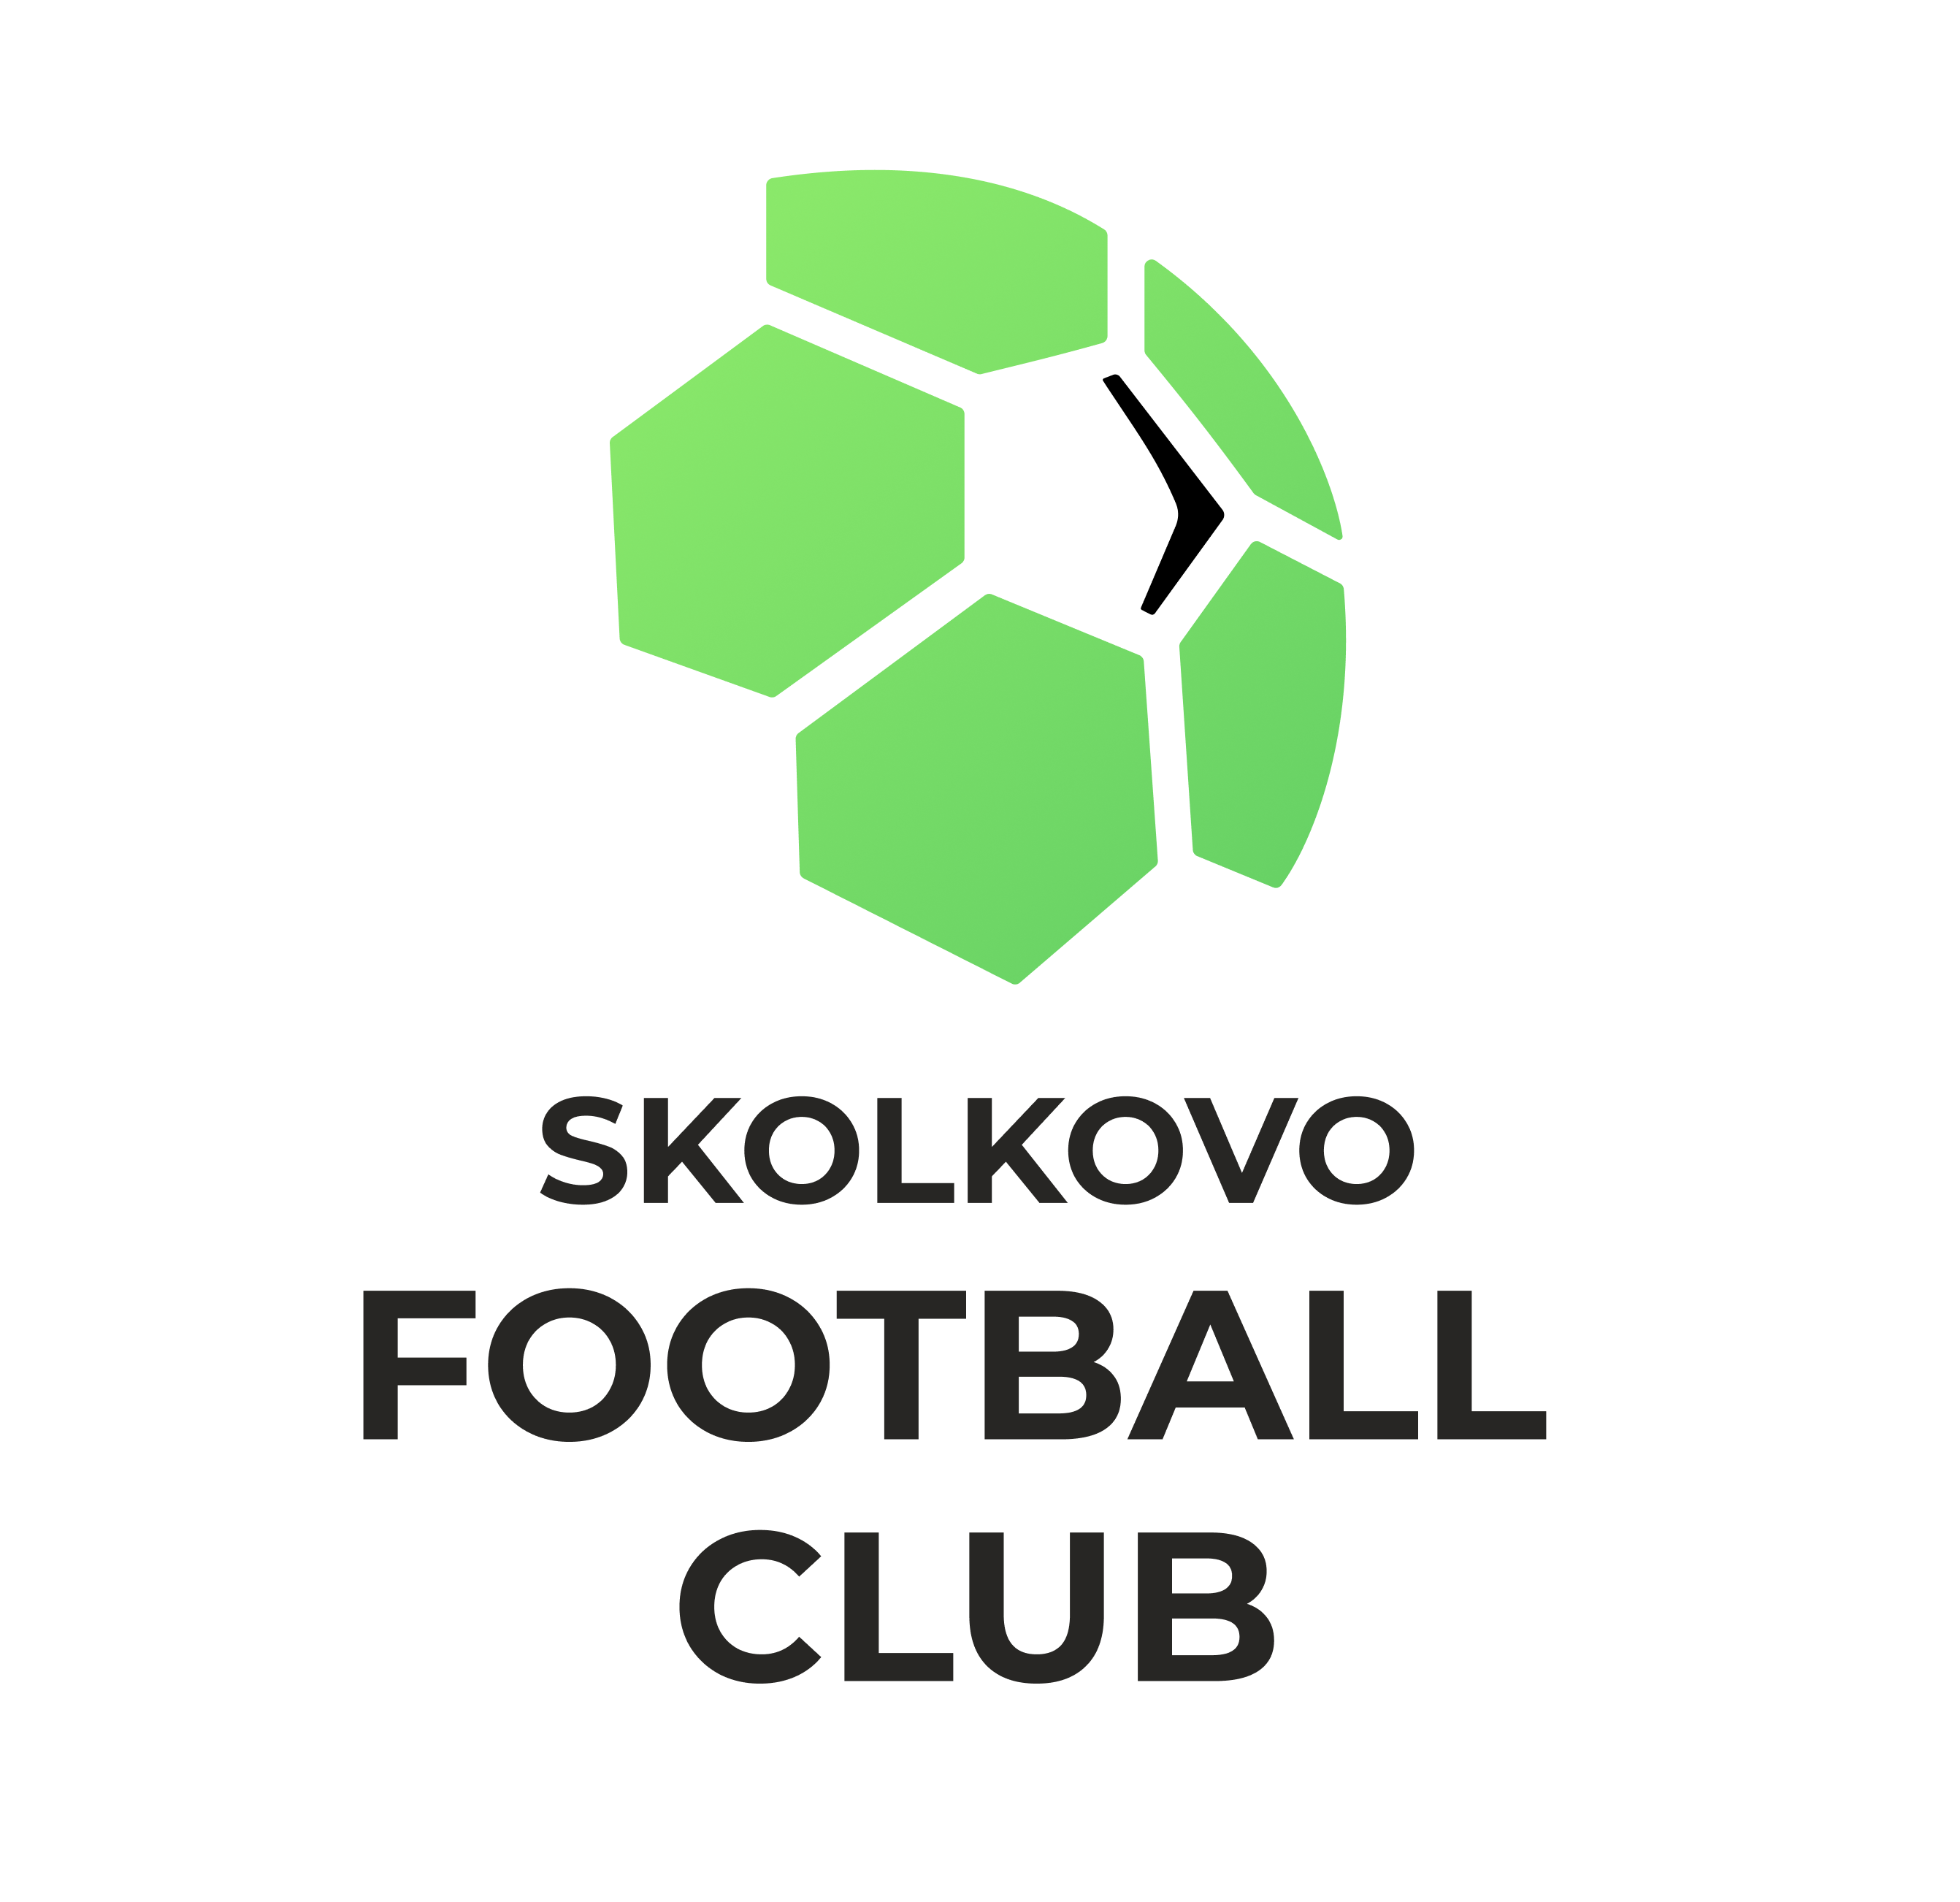 Skolkovo football club